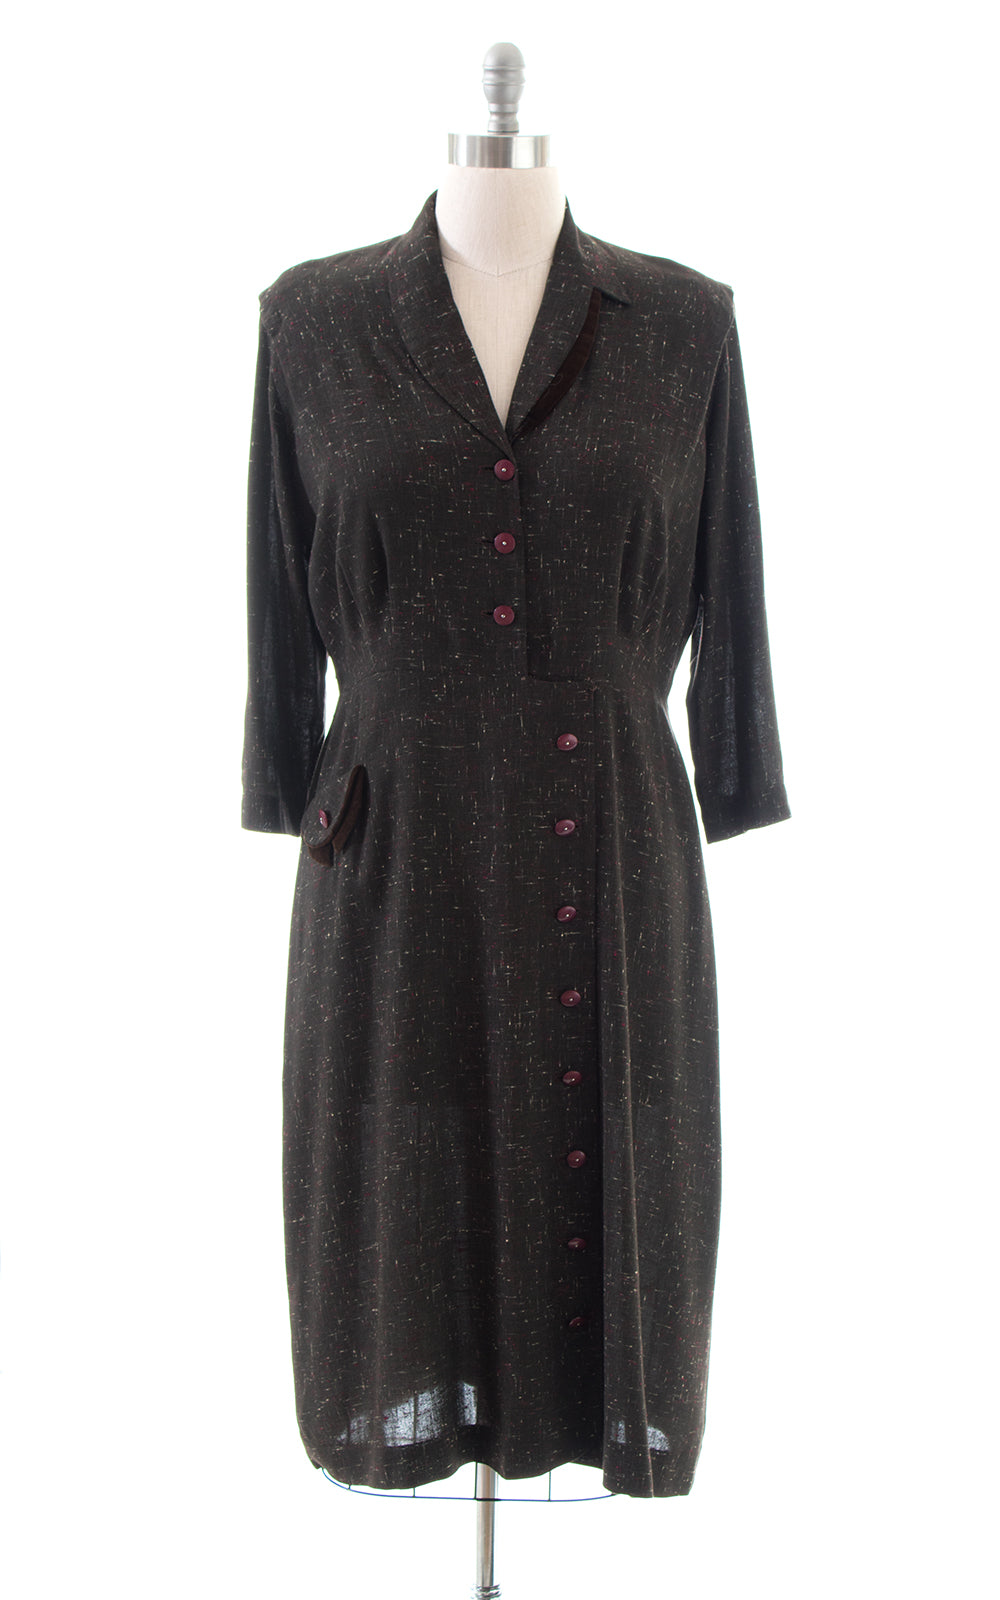 1950s Flecked Brown Shirtwaist Wiggle Dress